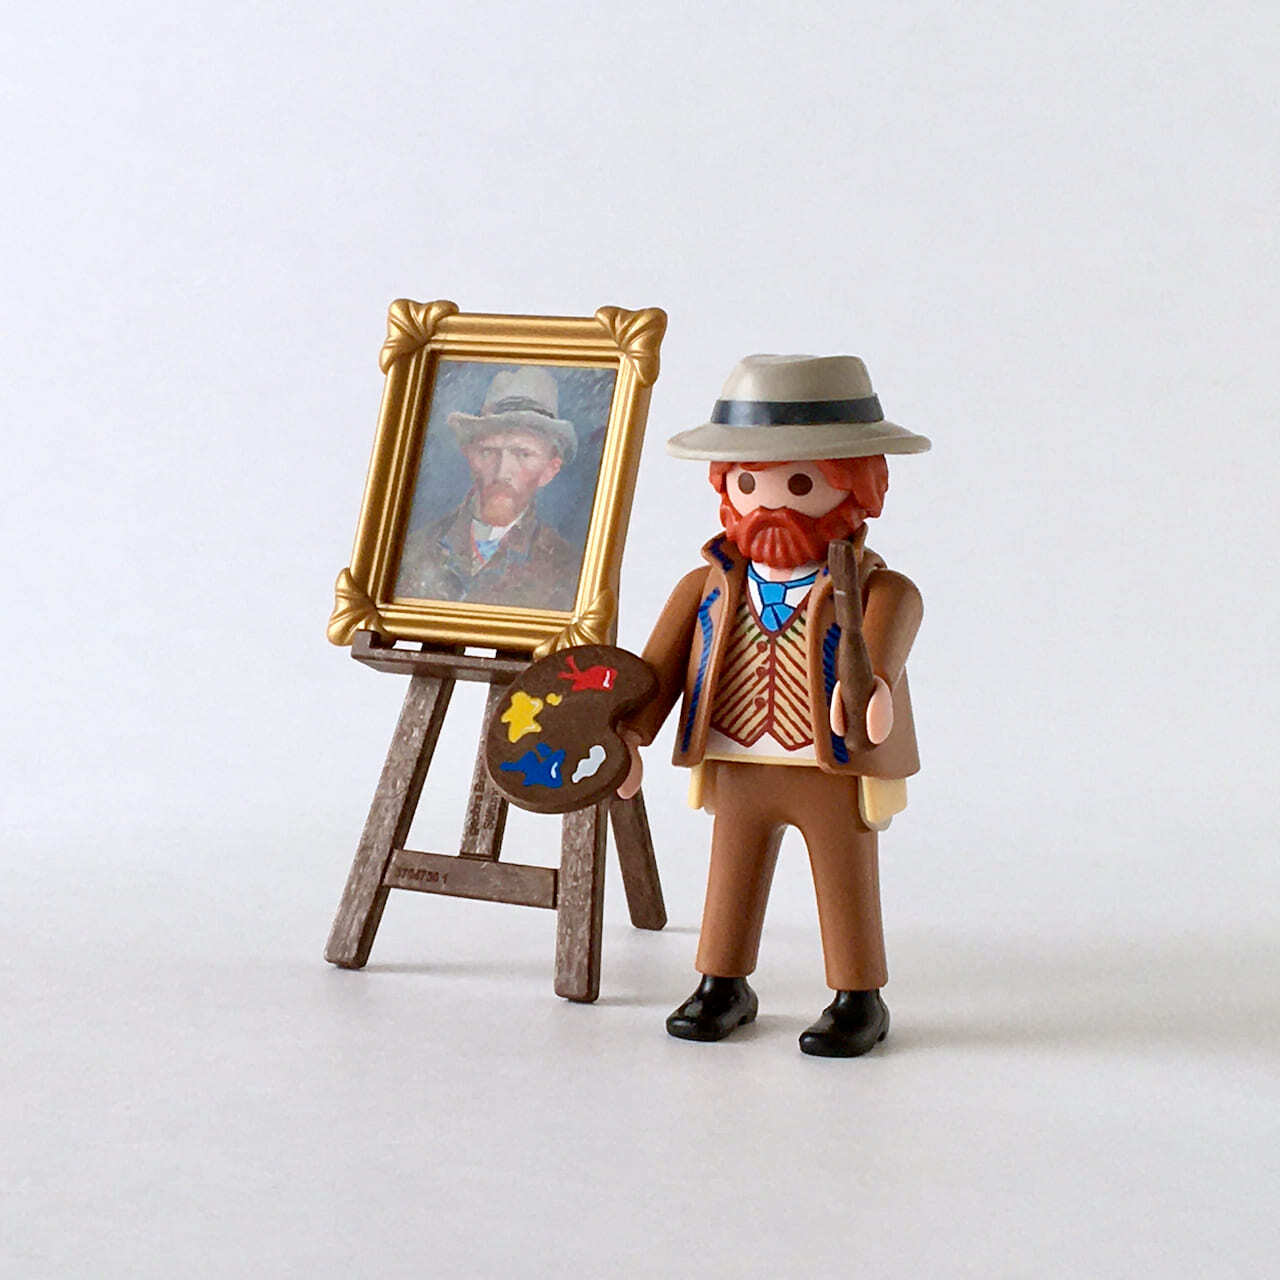 プレイモービル 「ゴッホ自画像」 アムステルダム国立美術館 / Playmobil "Self-Portrait Van Gogh" 70475 Rijksmuseum